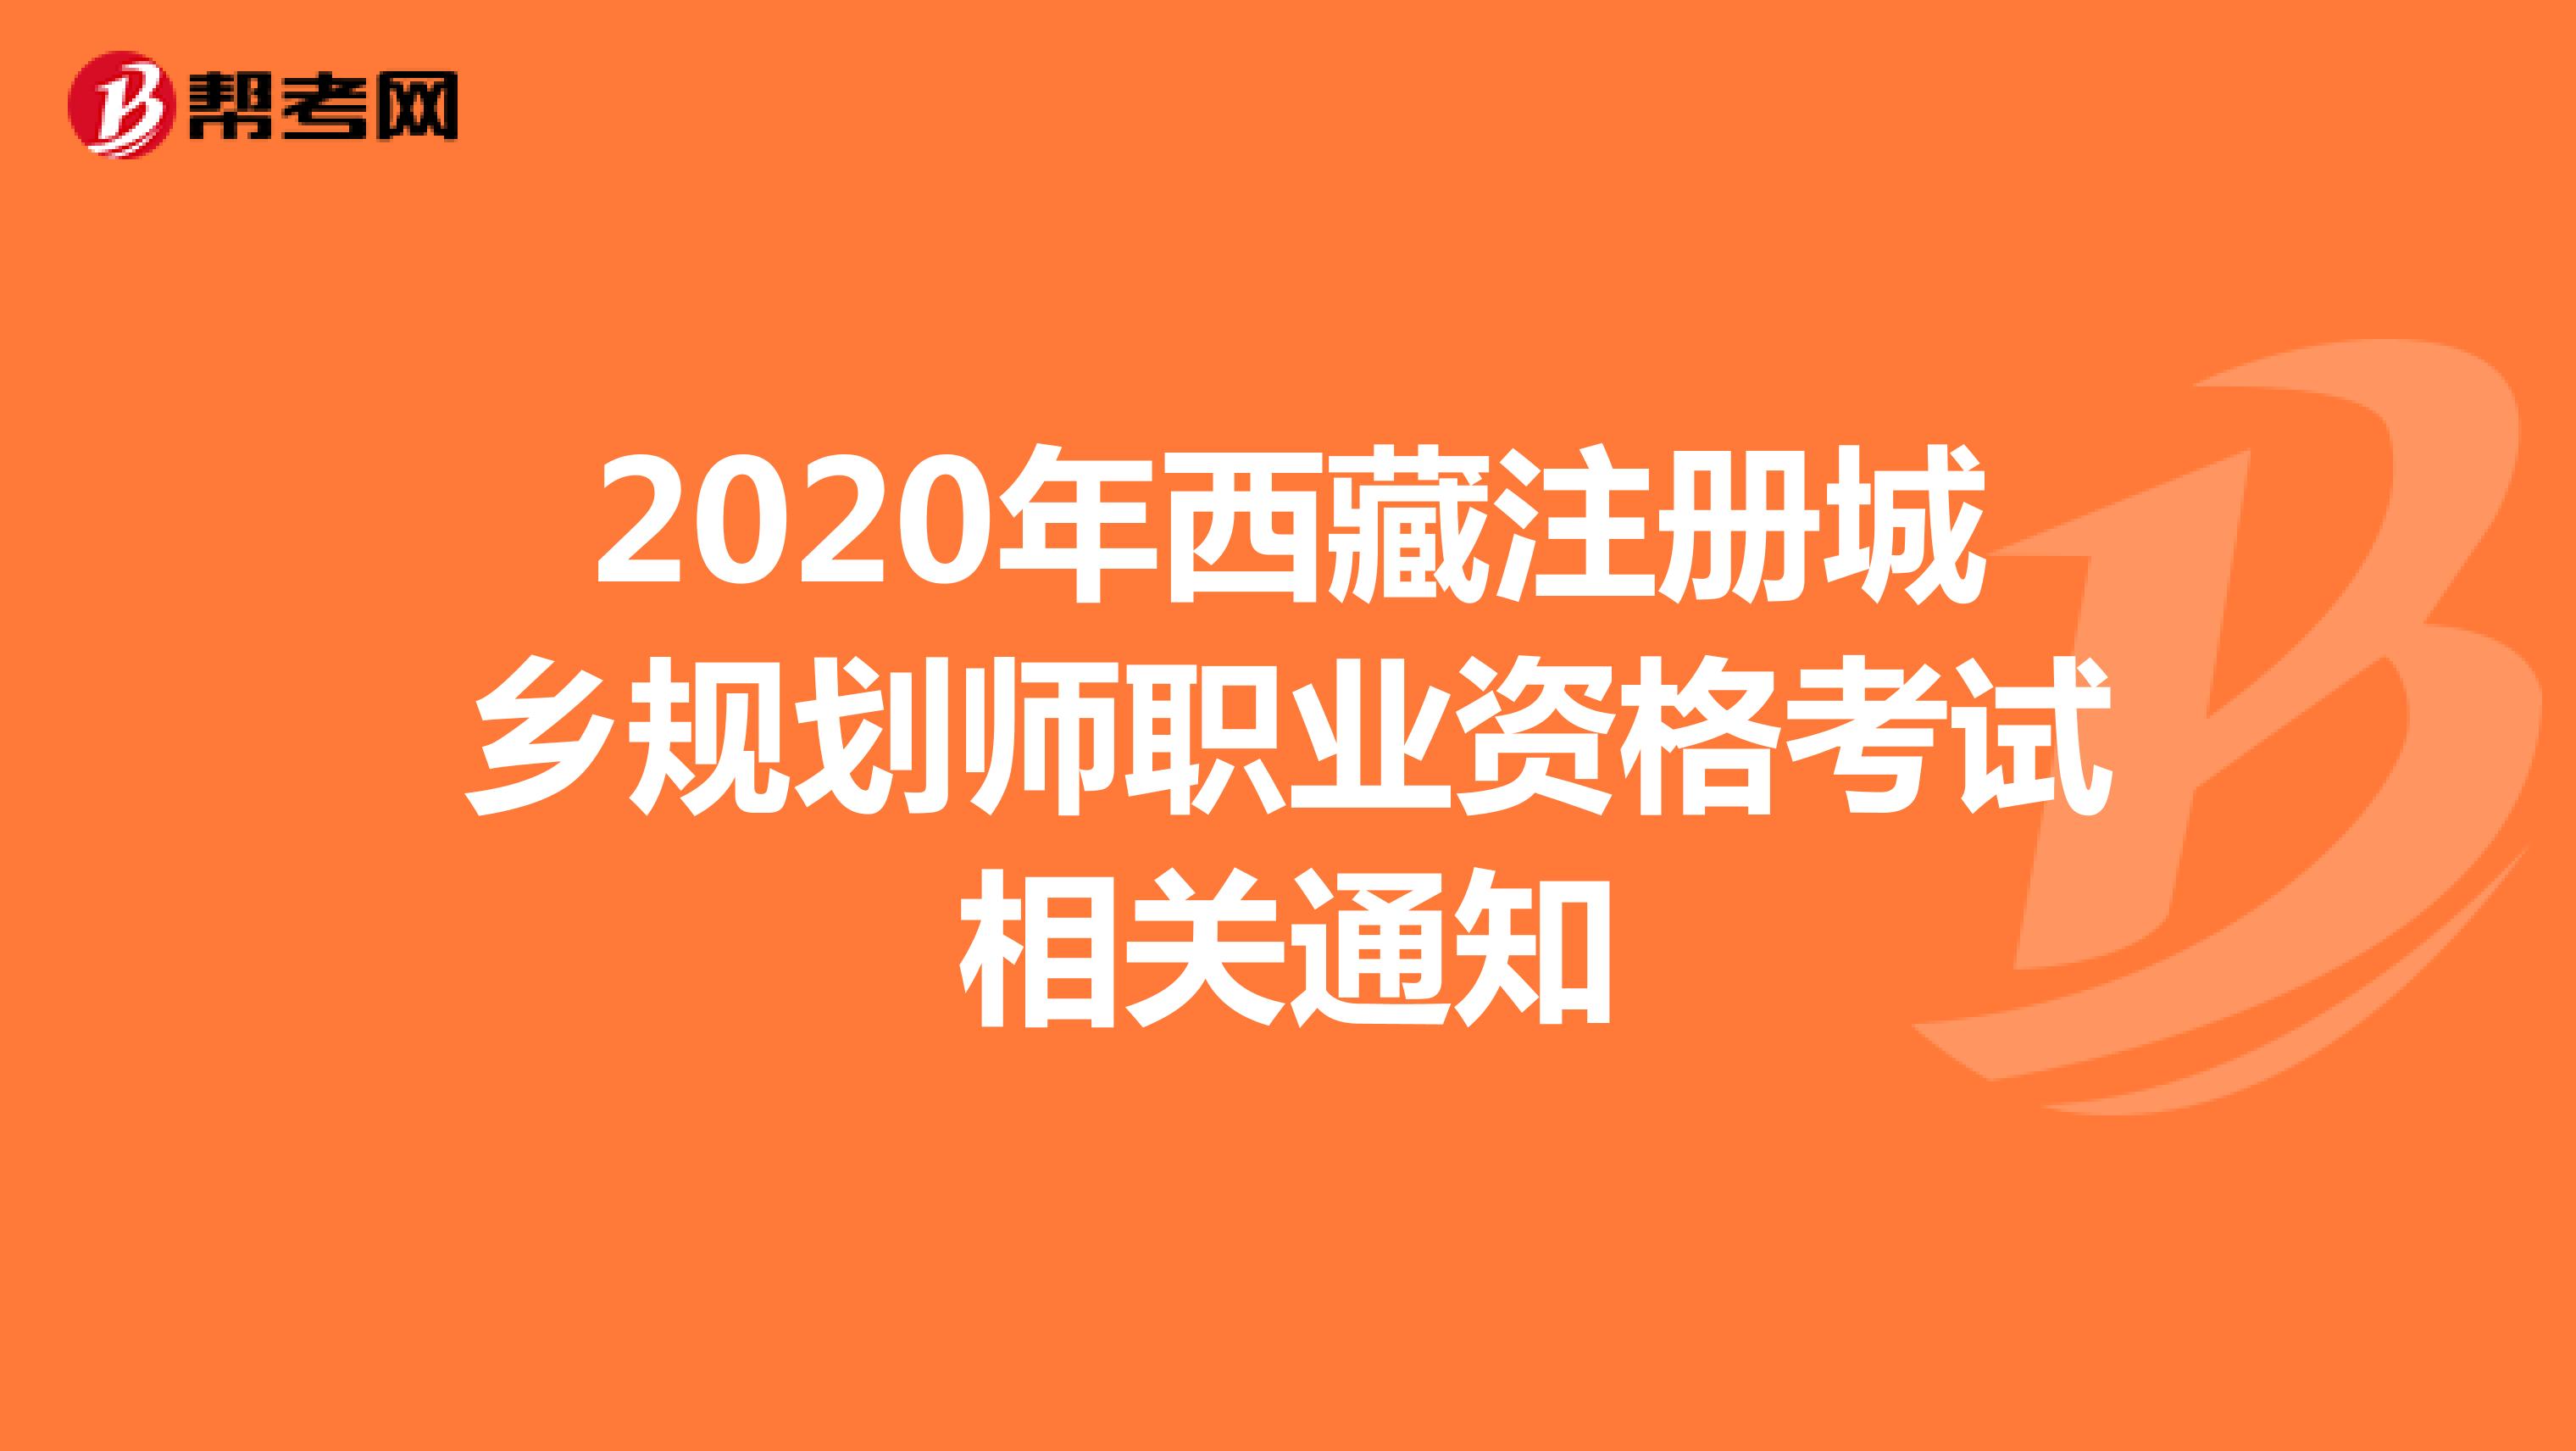 2020年西藏注册城乡规划师职业资格考试相关通知